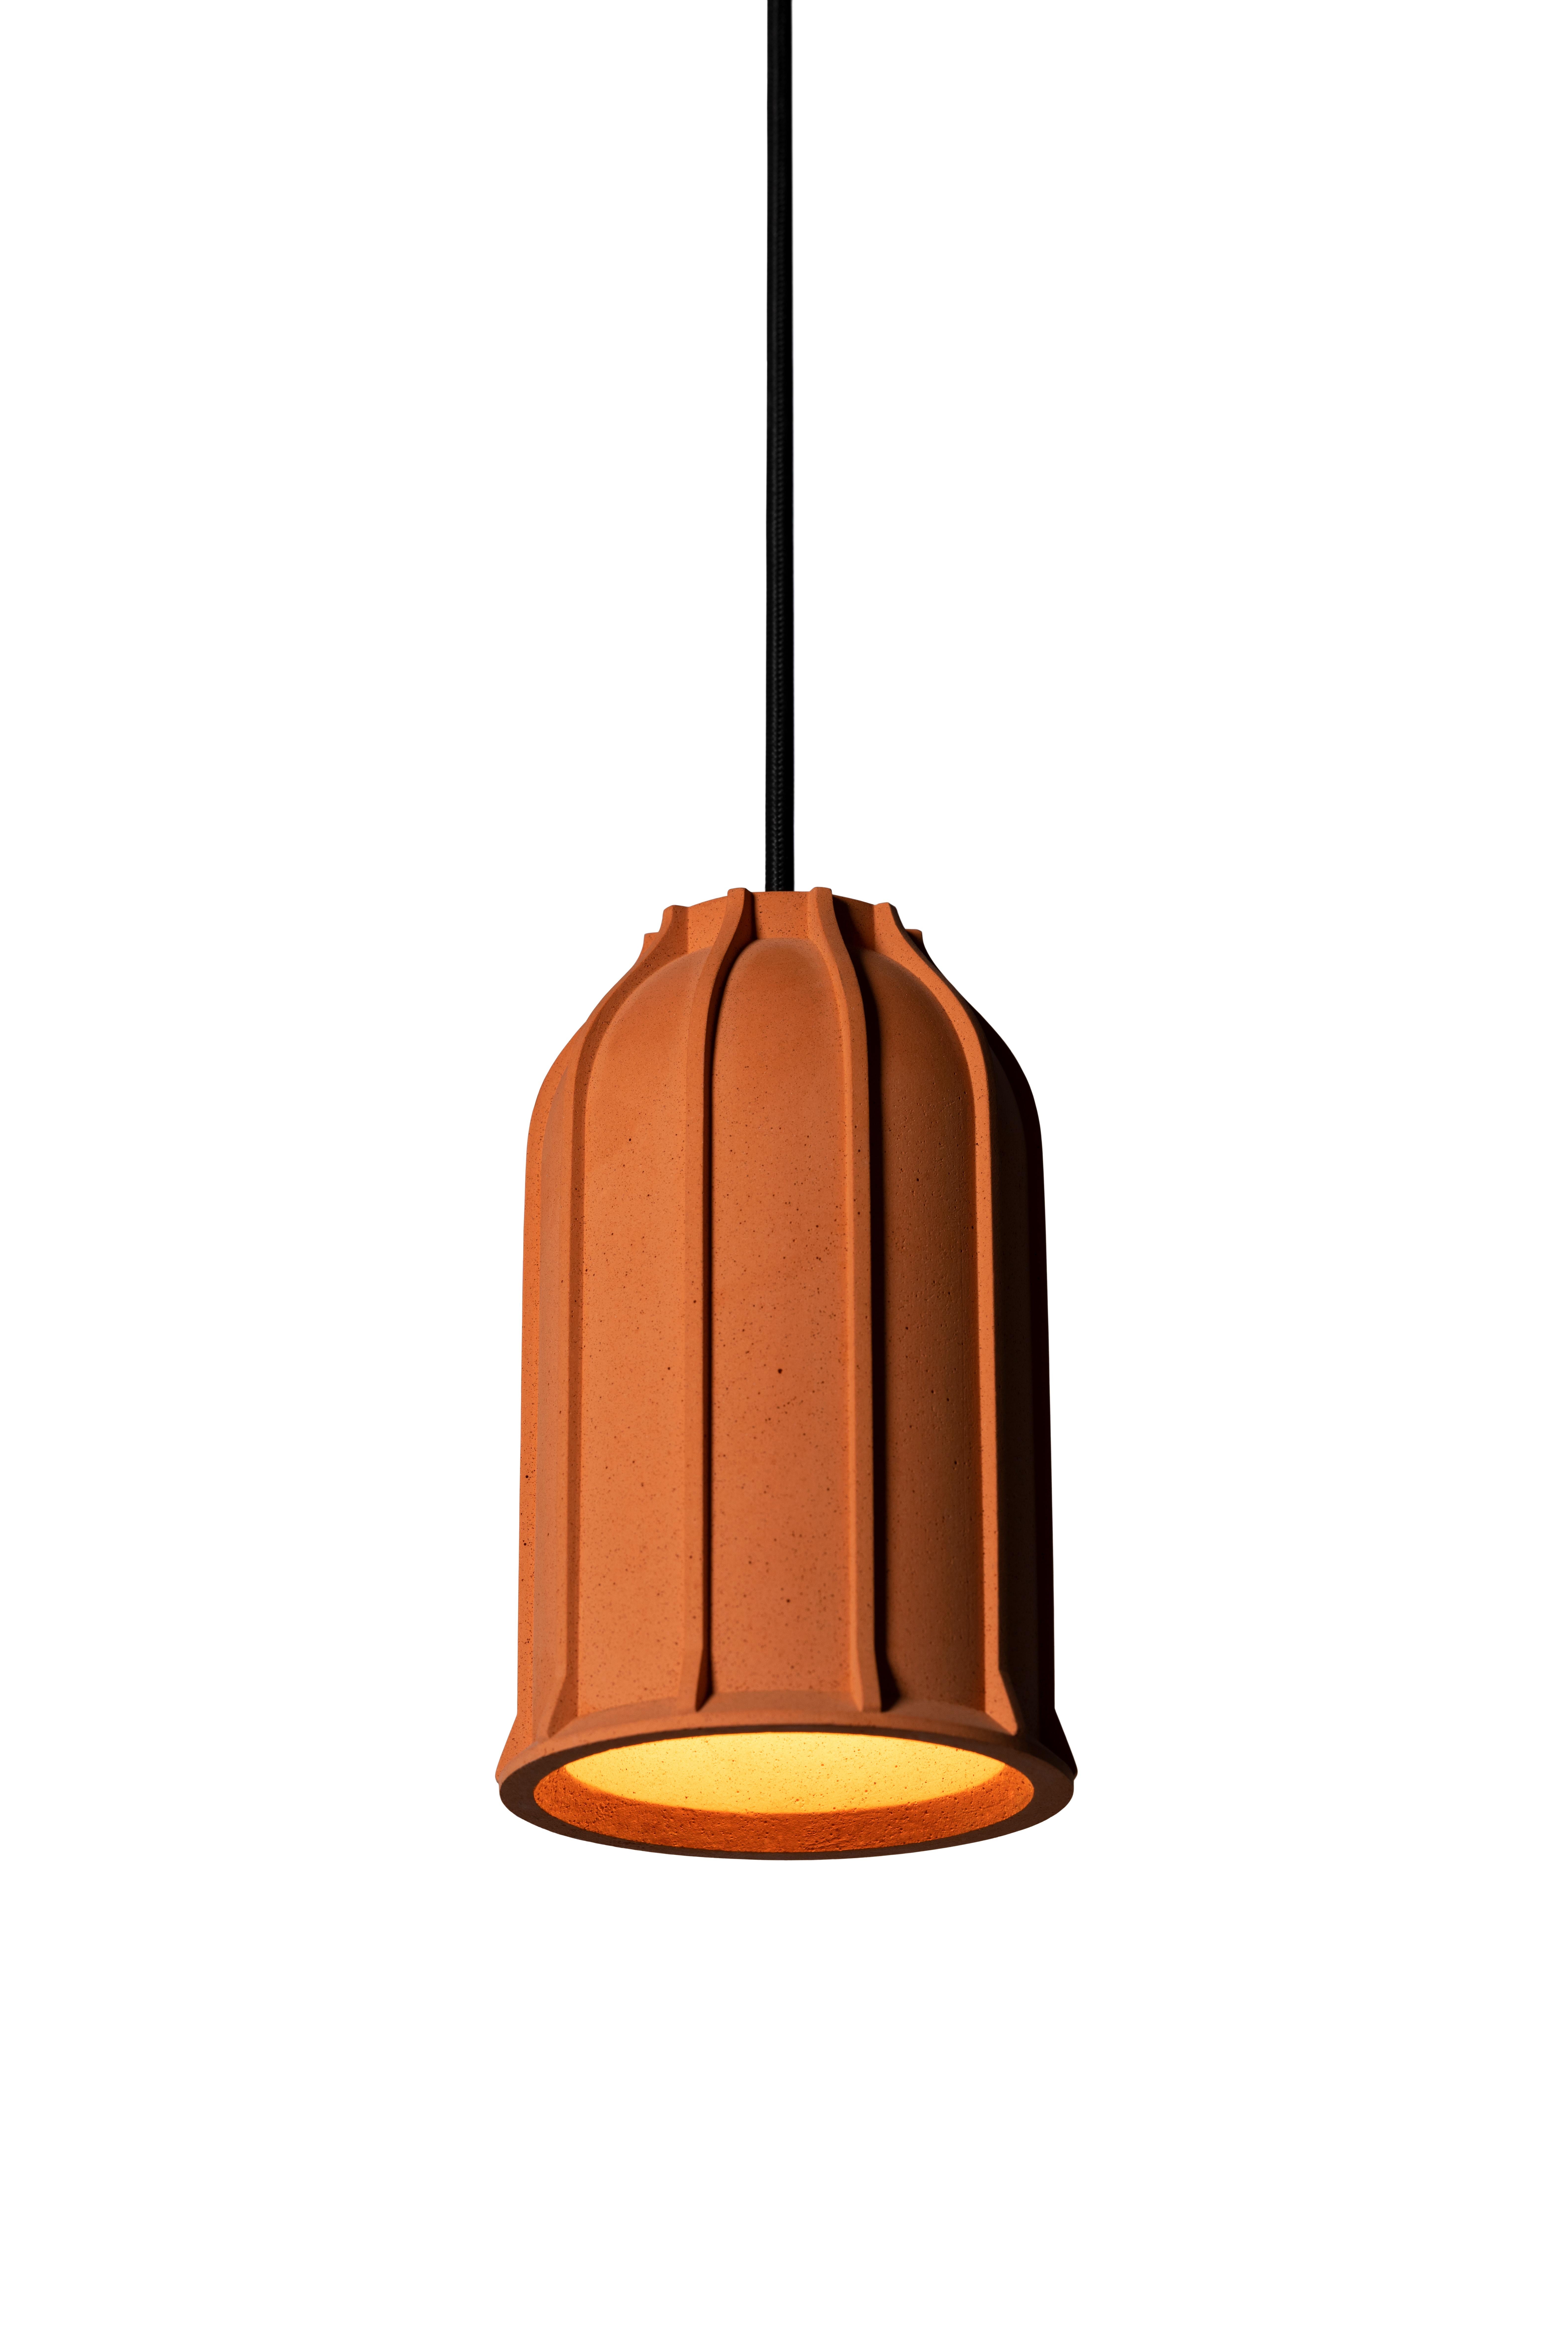 Lampe suspendue 'U' par Nongzao x Bentu Design.
Matériau : Terre cuite 
Couleur : orange terreux 

Mesures : 18.5 cm de haut, 11,5 cm de diamètre
Fil : 3 mètres (noir)
Type de lampe : AC 100-240V 50-60Hz 9W - Compatible avec le système